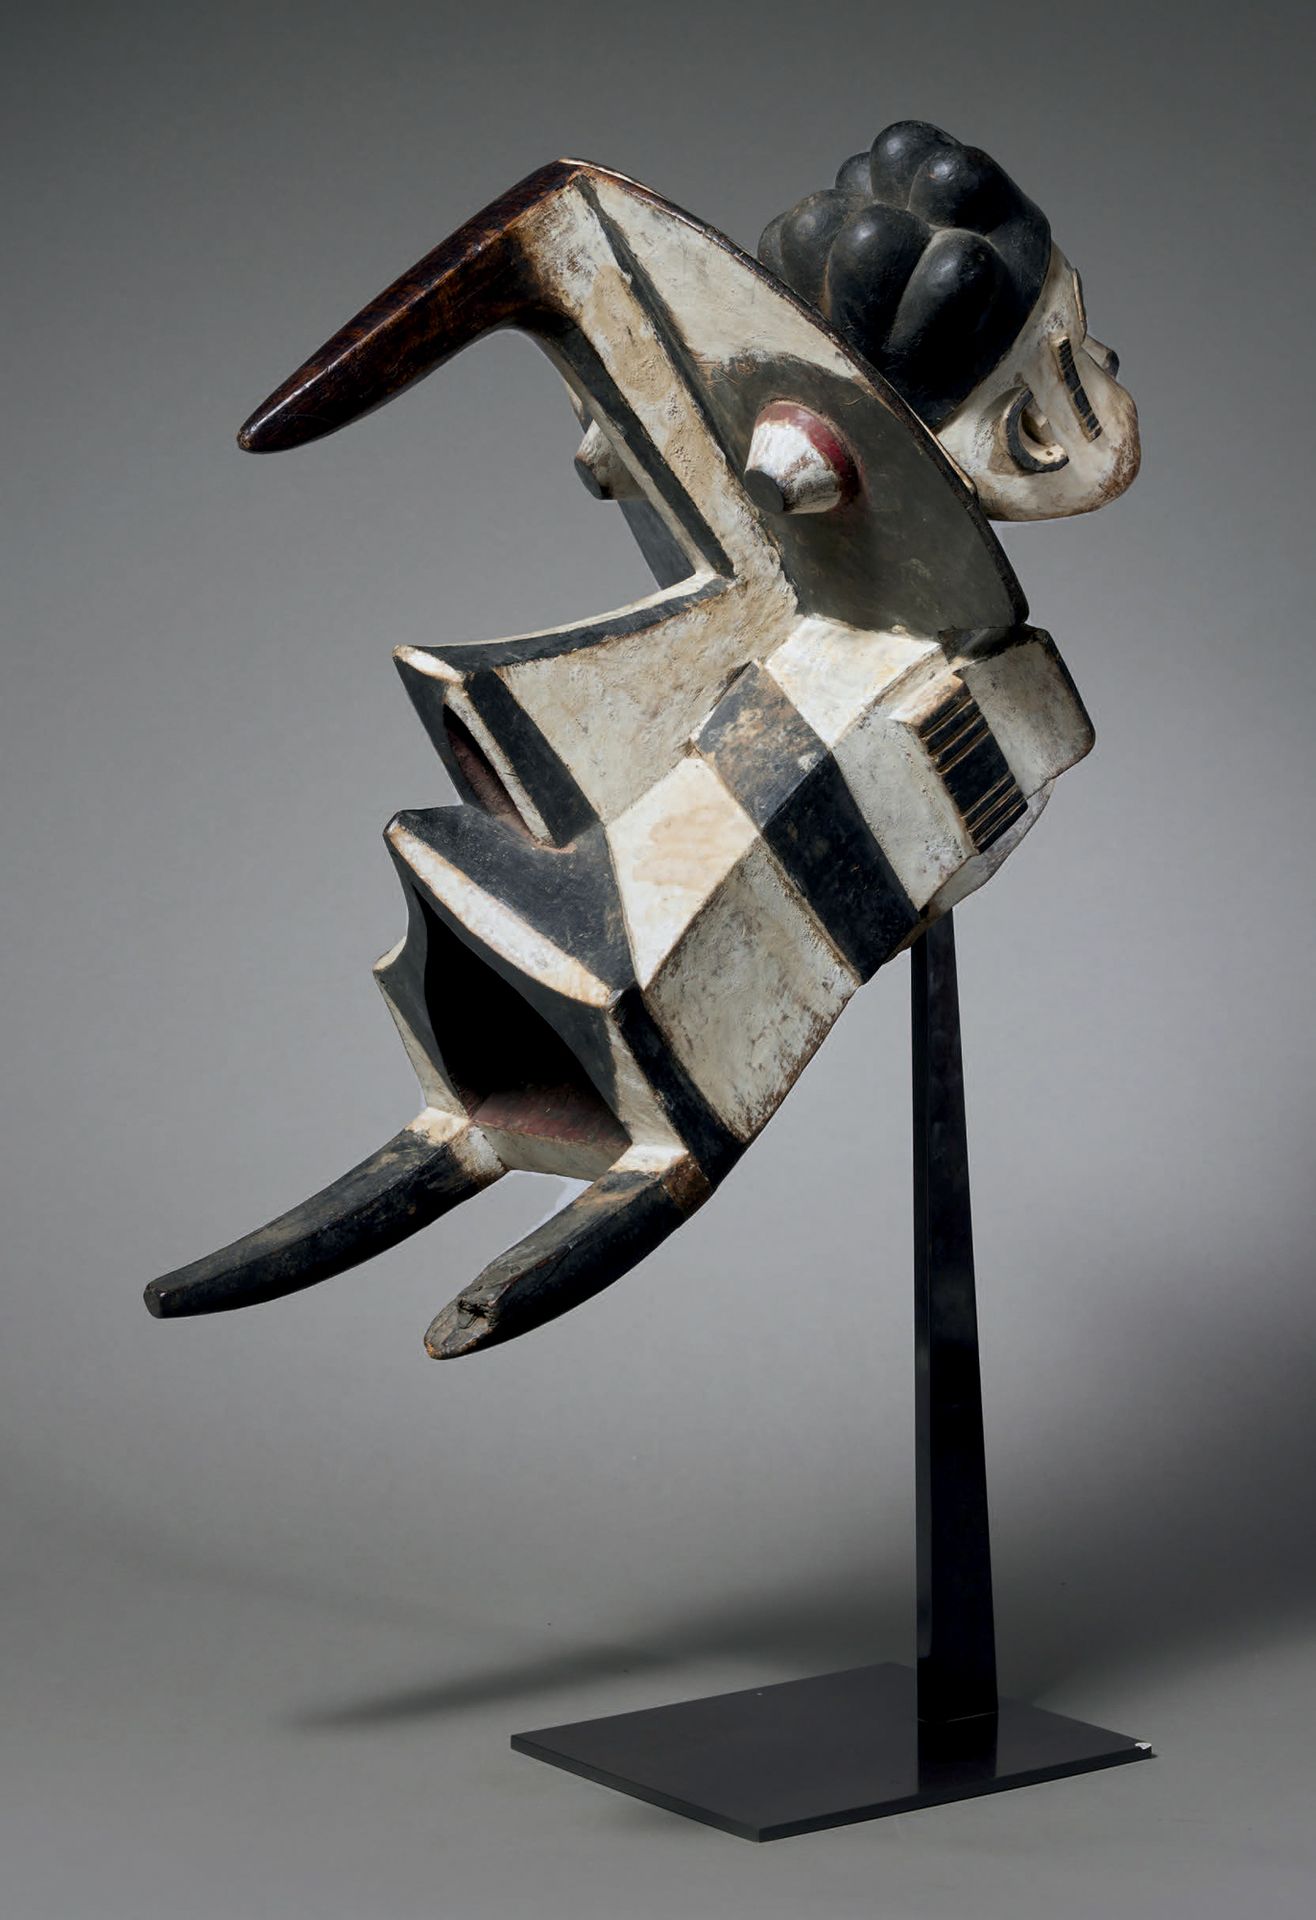 Null Maschera Igbo-Izzi Ogbodo enyi
Nigeria
Legno
H. 36 cm - L. 60 cm
Una masche&hellip;